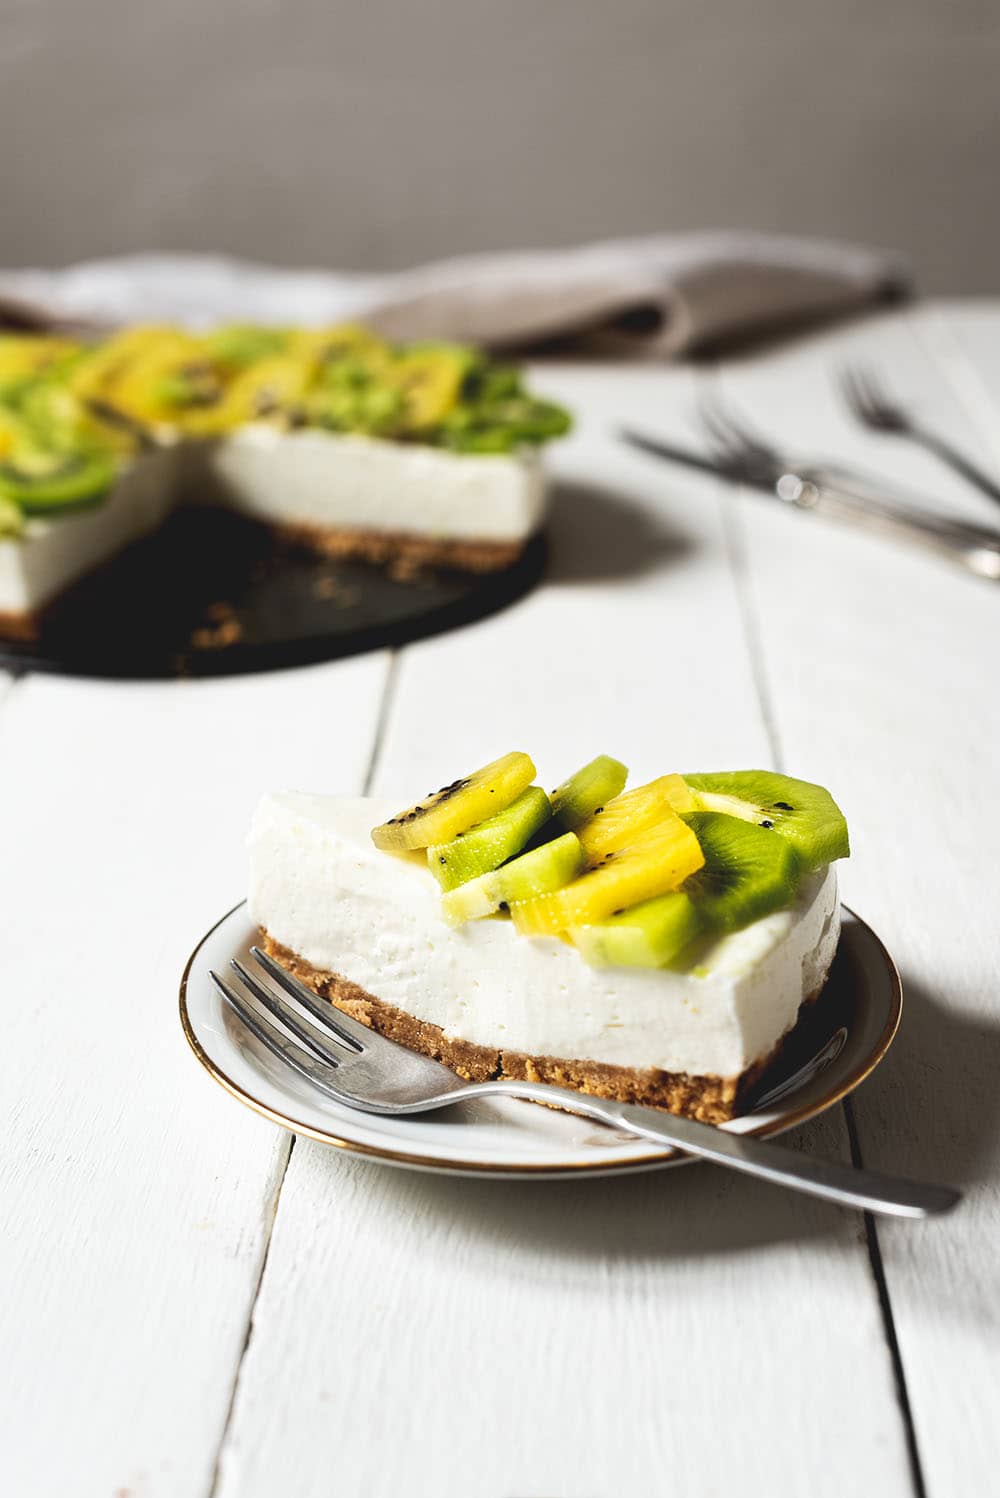 En una mesa de madera blanca está puesta una ración hermosa de tarta de kiwi y yogur. Detrás se ve la tarta, unos cubiertos y un paño de cocina.